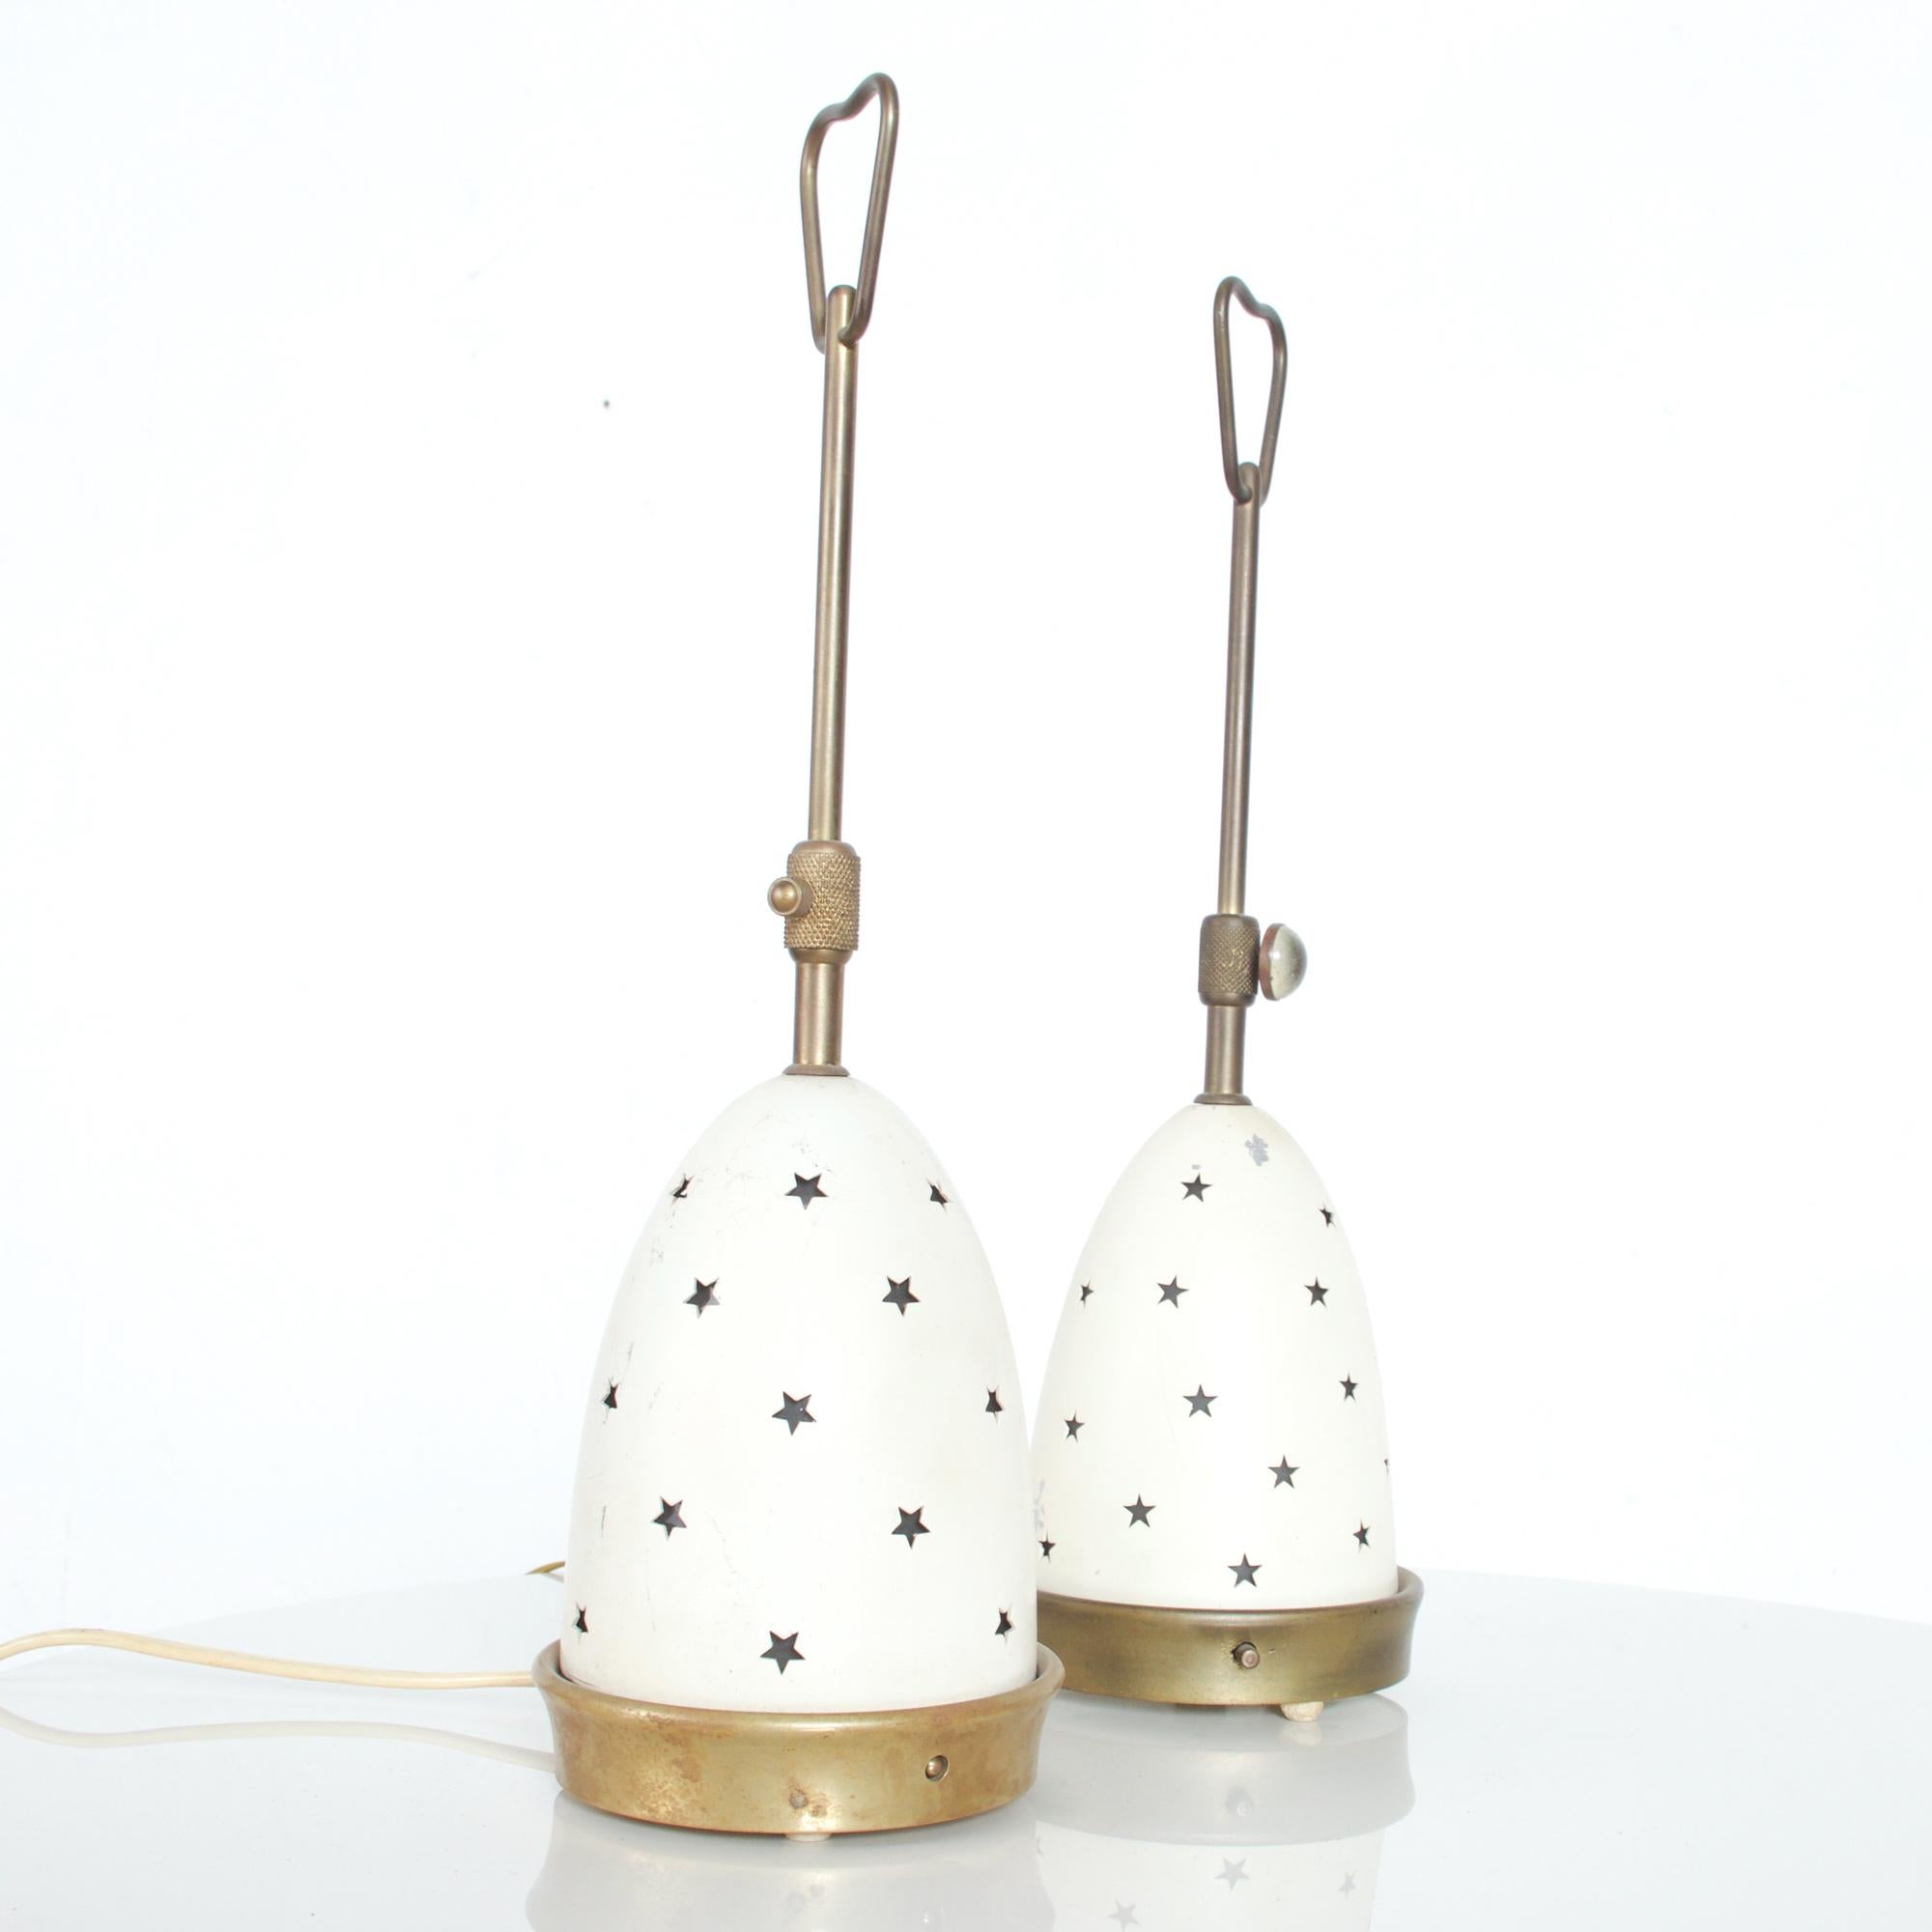 Ravissante paire de lampes de table Stelline modèle 12291 conçue par Angelo Lelli pour Arredoluce Italie années 1950.
Les lampes ont une structure en laiton et un double abat-jour en verre opalin givré et en métal. 
L'abat-jour extérieur est orné